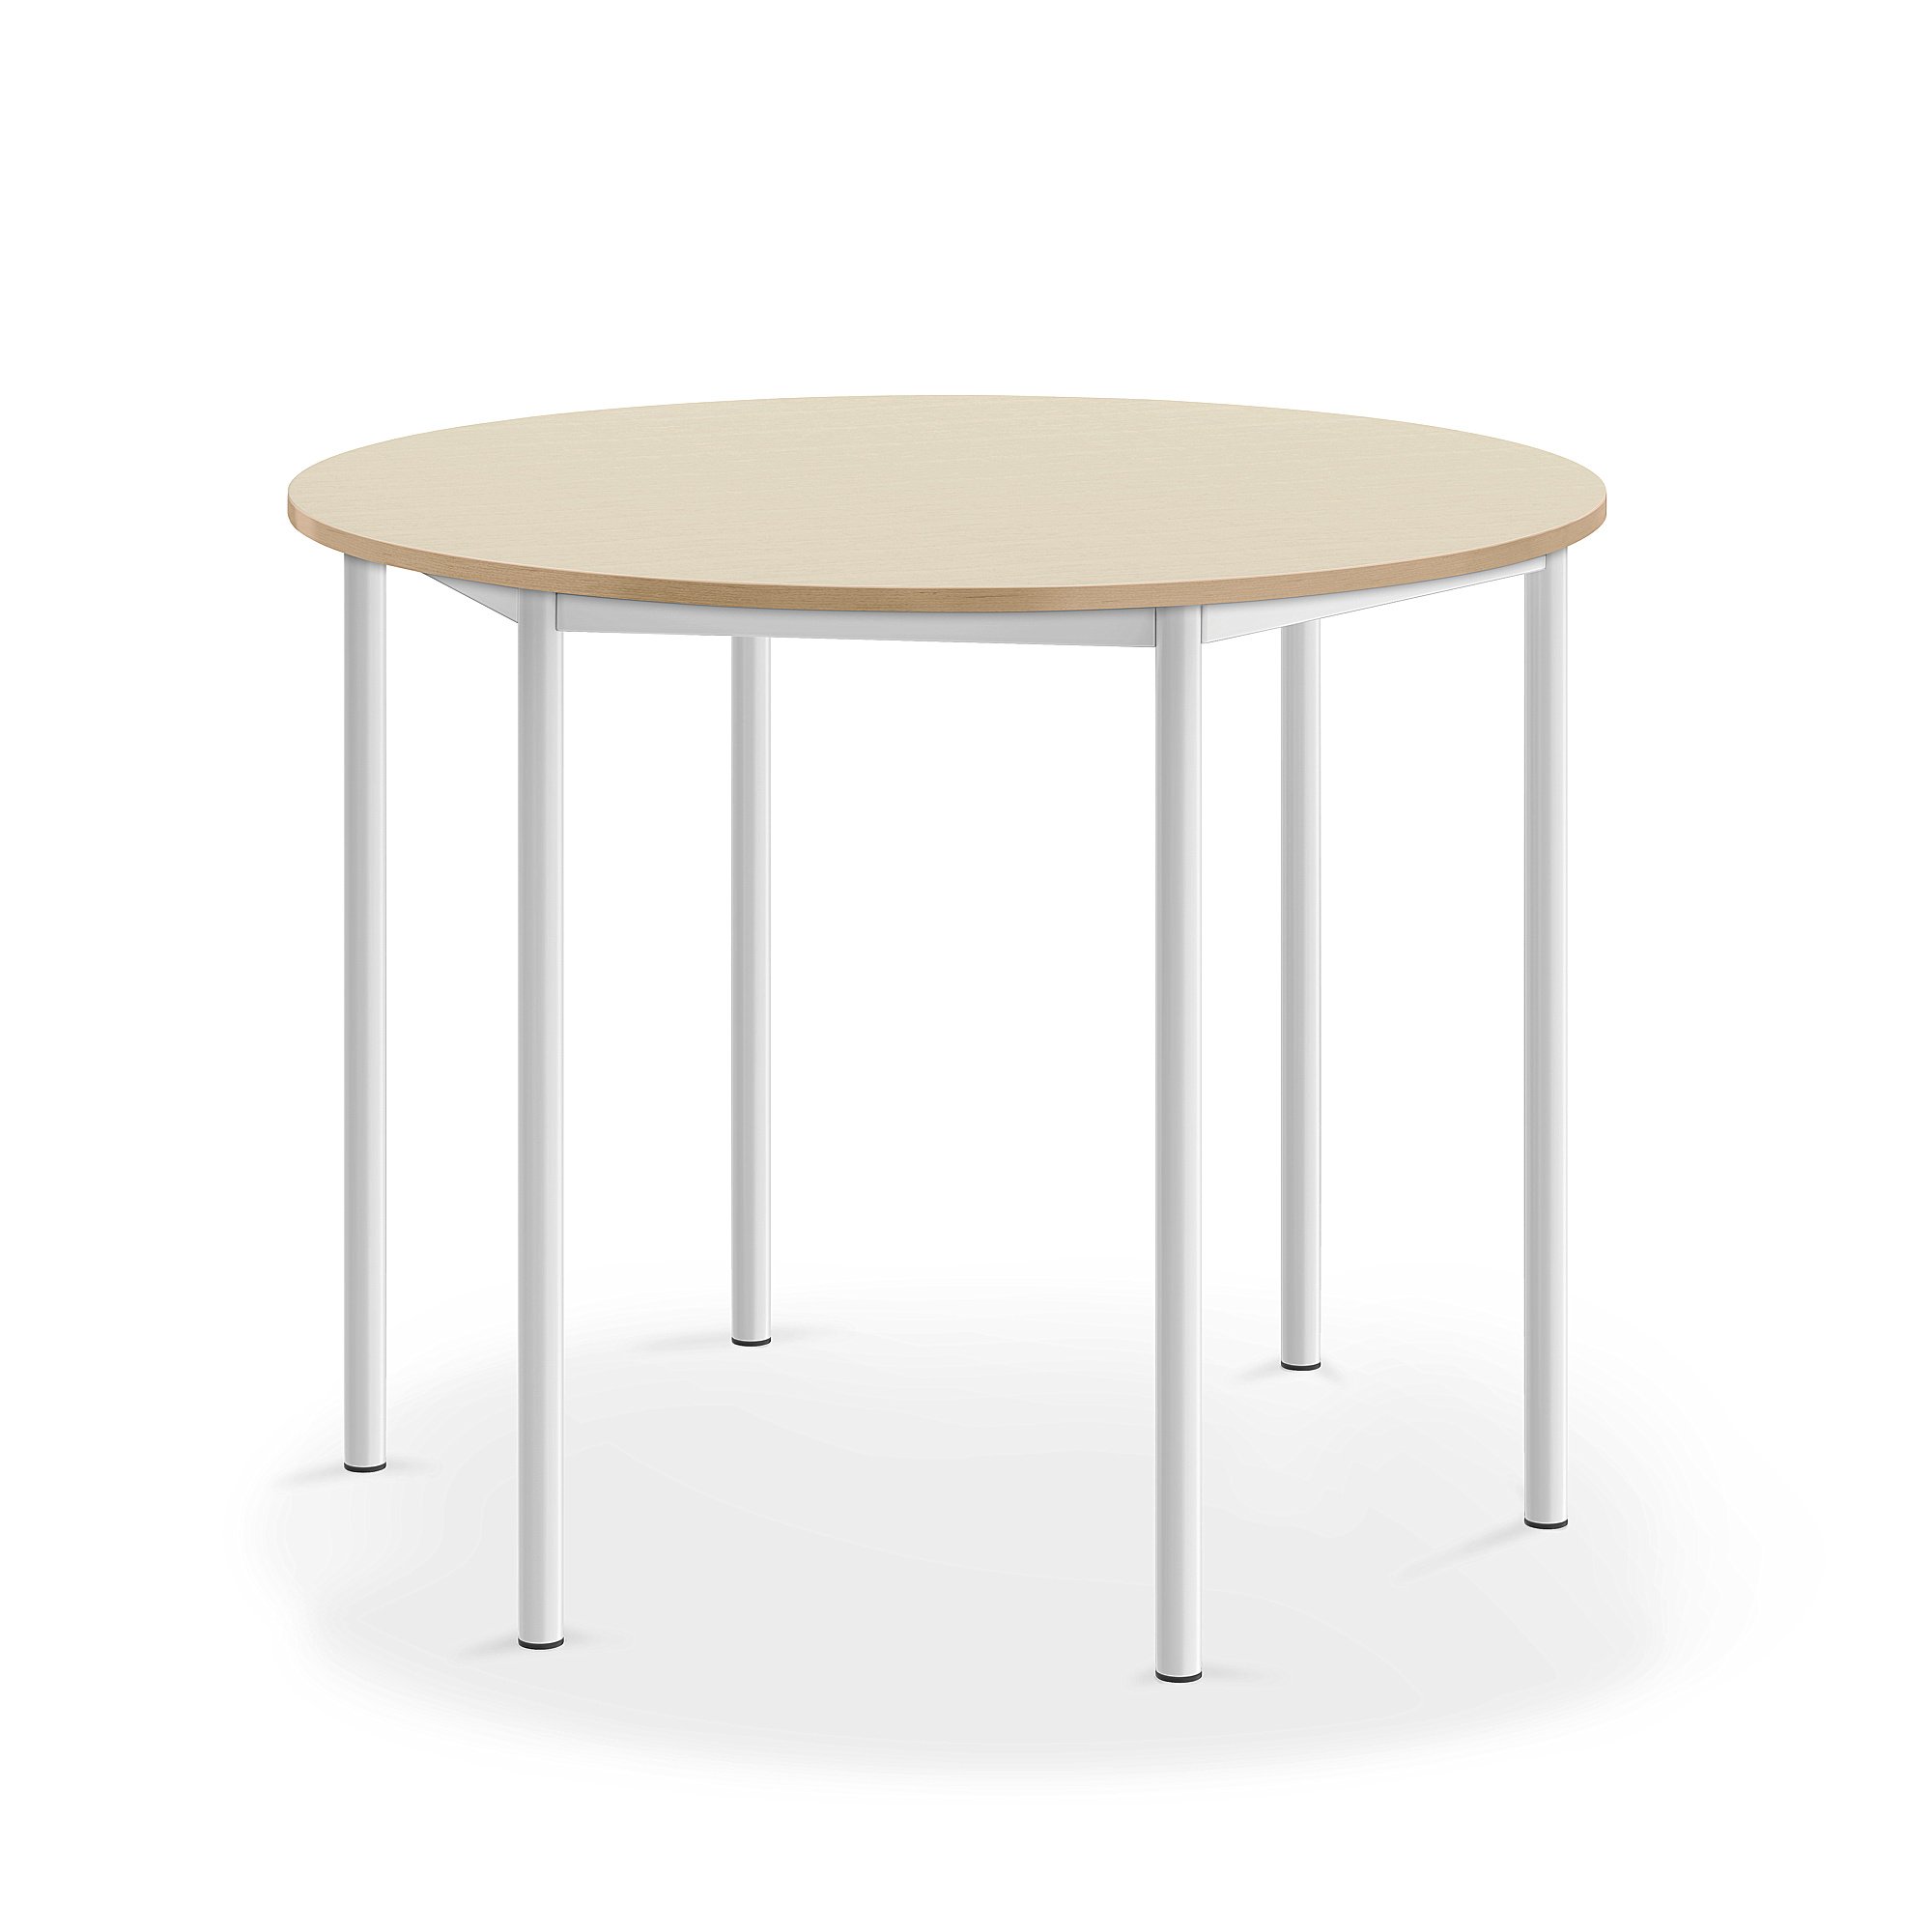 Stůl BORÅS, Ø1200x900 mm, bílé nohy, HPL deska, bříza